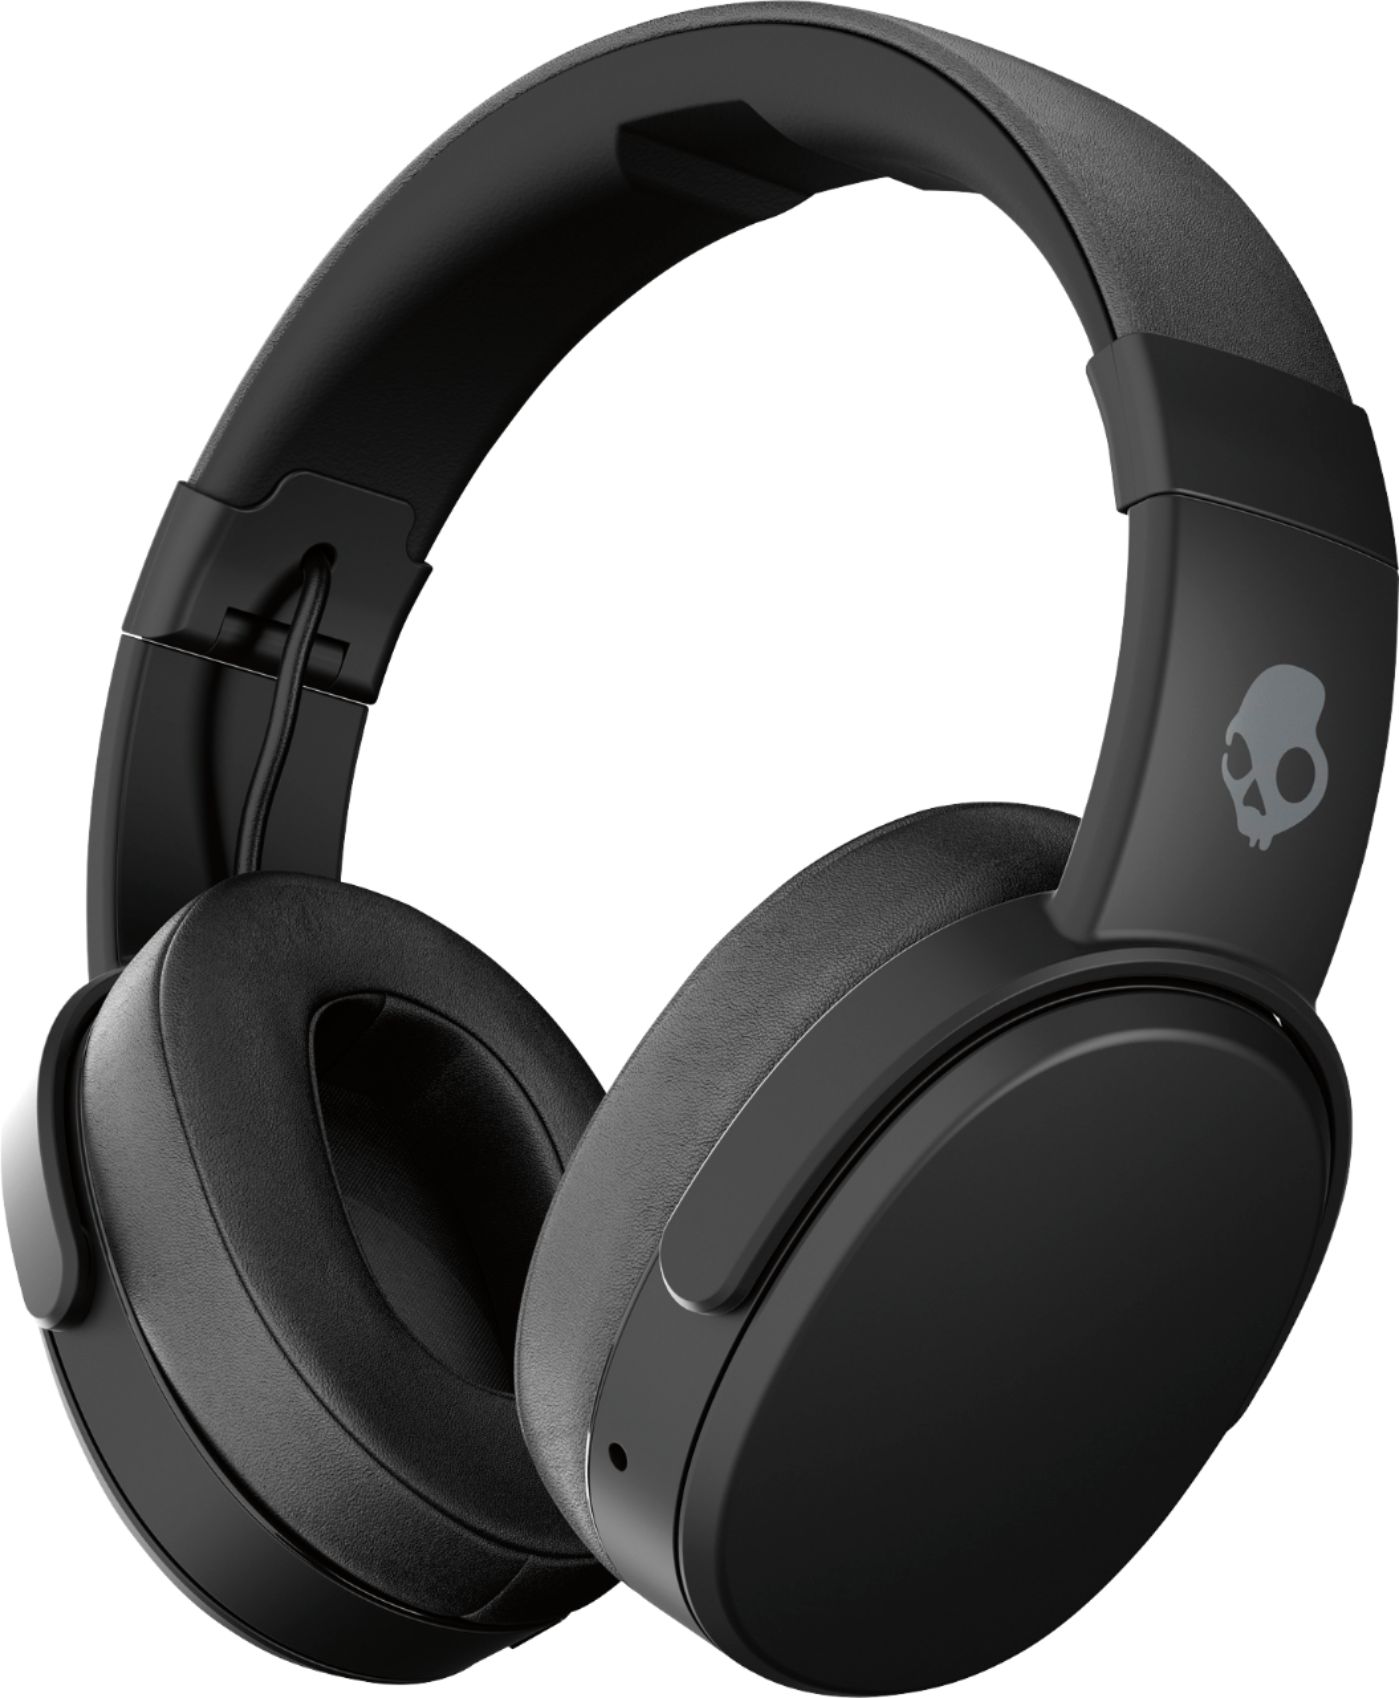 pensioen erosie Voorzichtig Skullcandy Crusher Wireless Over-the-Ear Headphones Black/Coral S6CRW-K591  - Best Buy